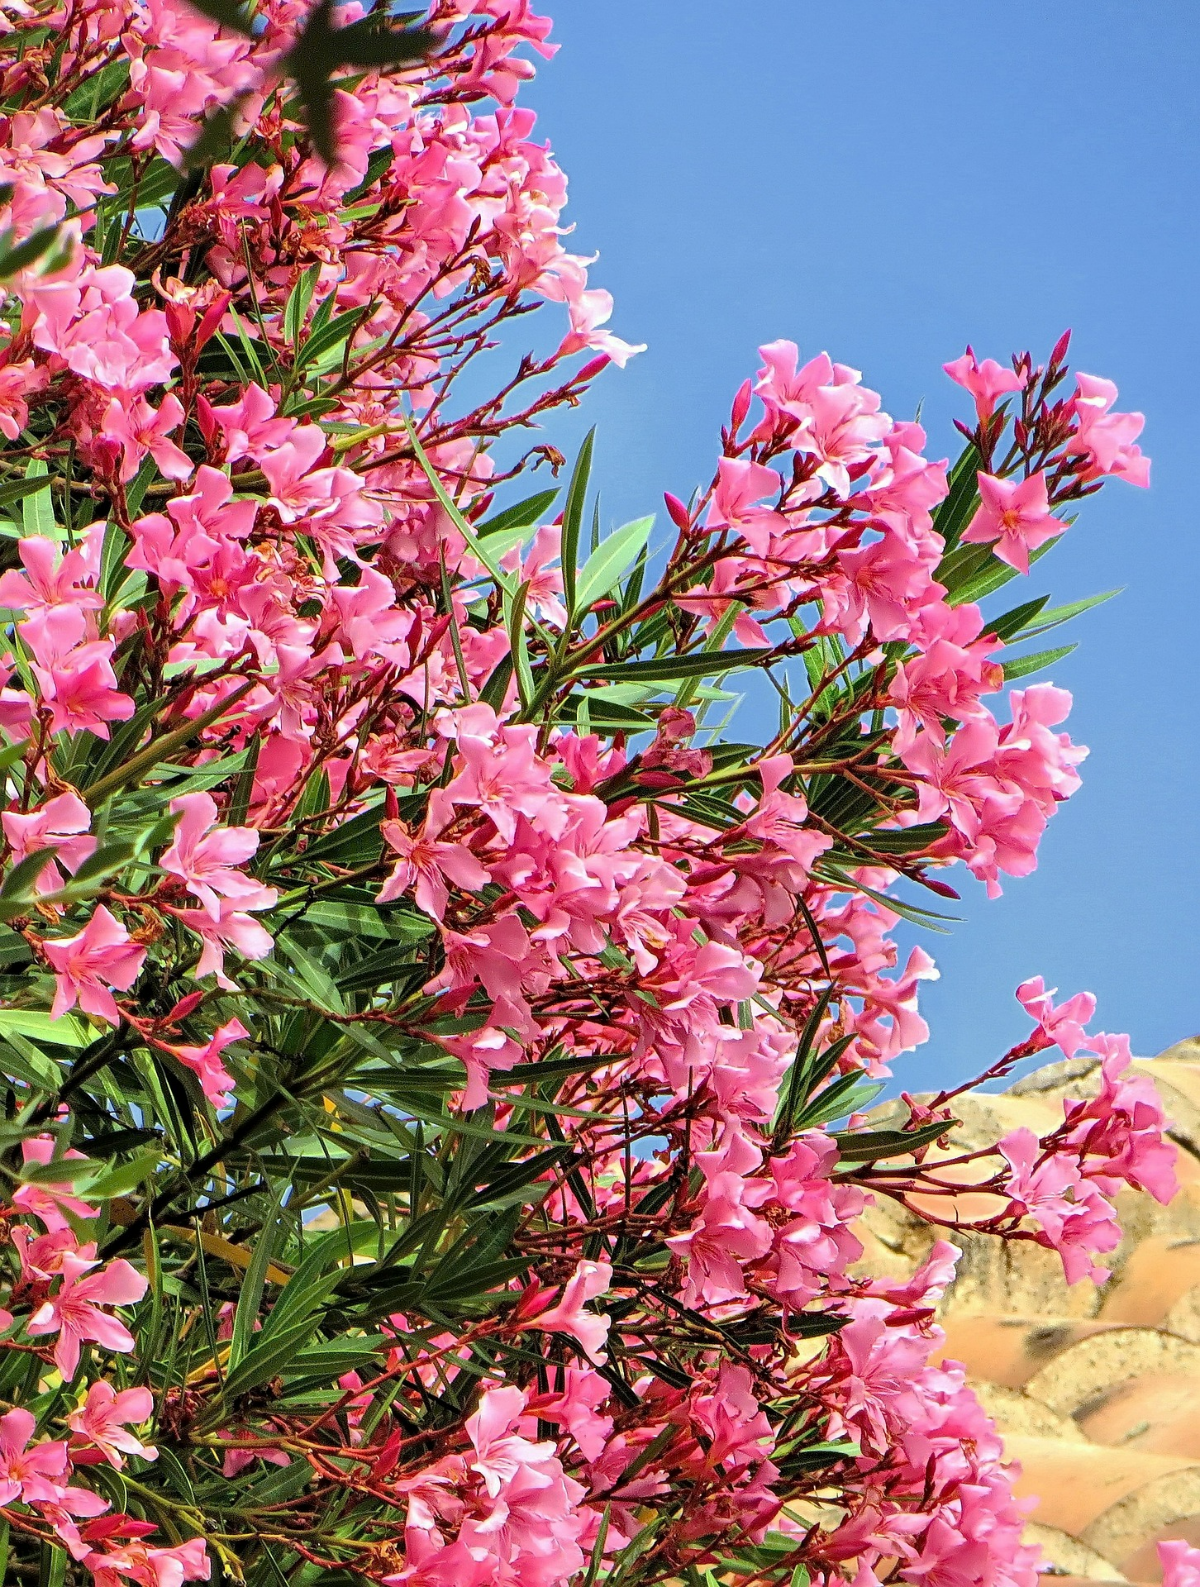 oleander draussen ueberwintern rosa strauch garten